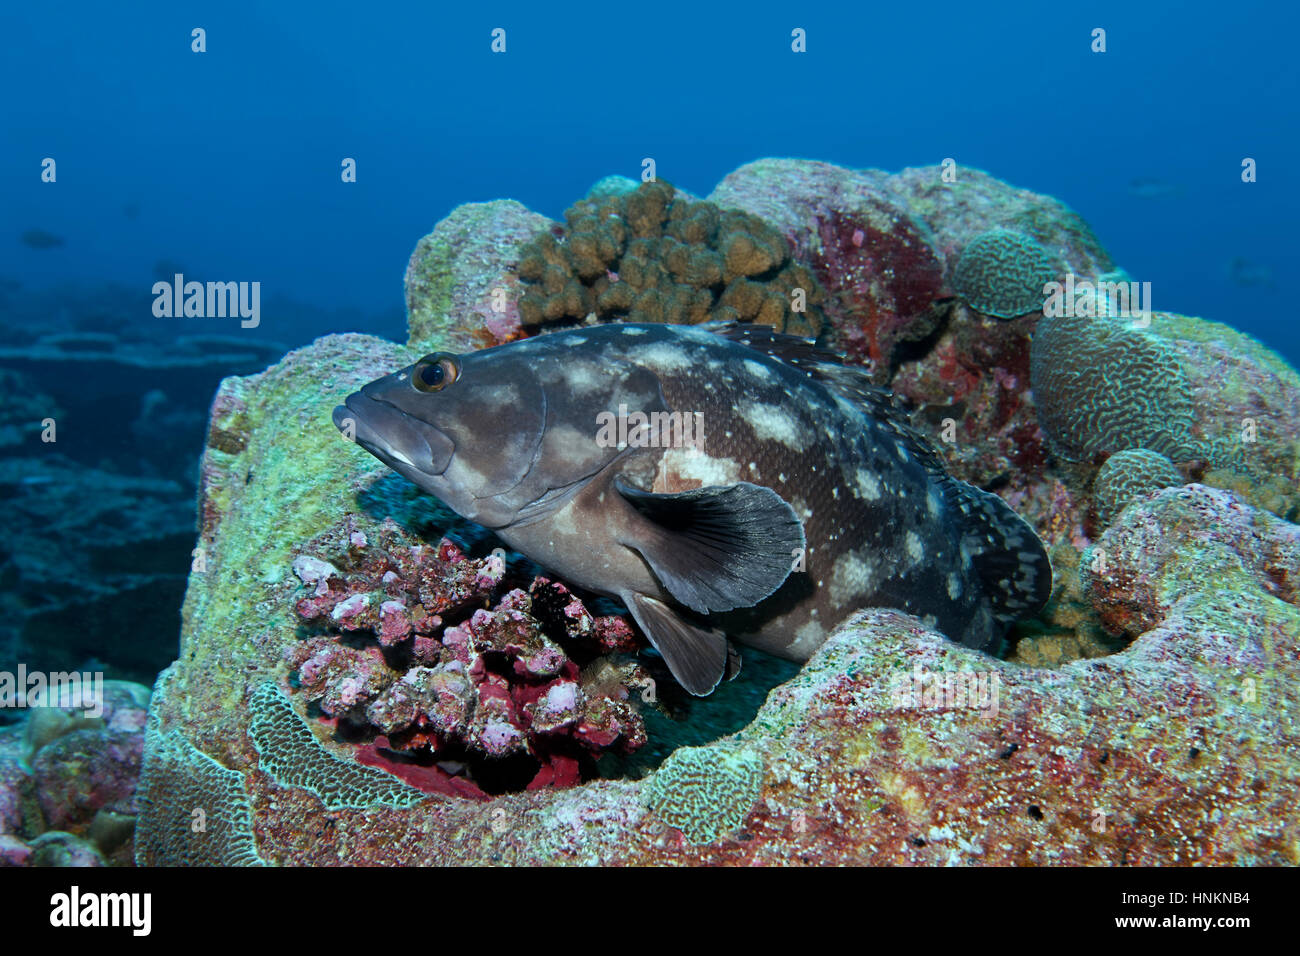 Whitespotted grouper (Epinephelus caeruleopunctatus) Indian Ocean, Maldives Stock Photo